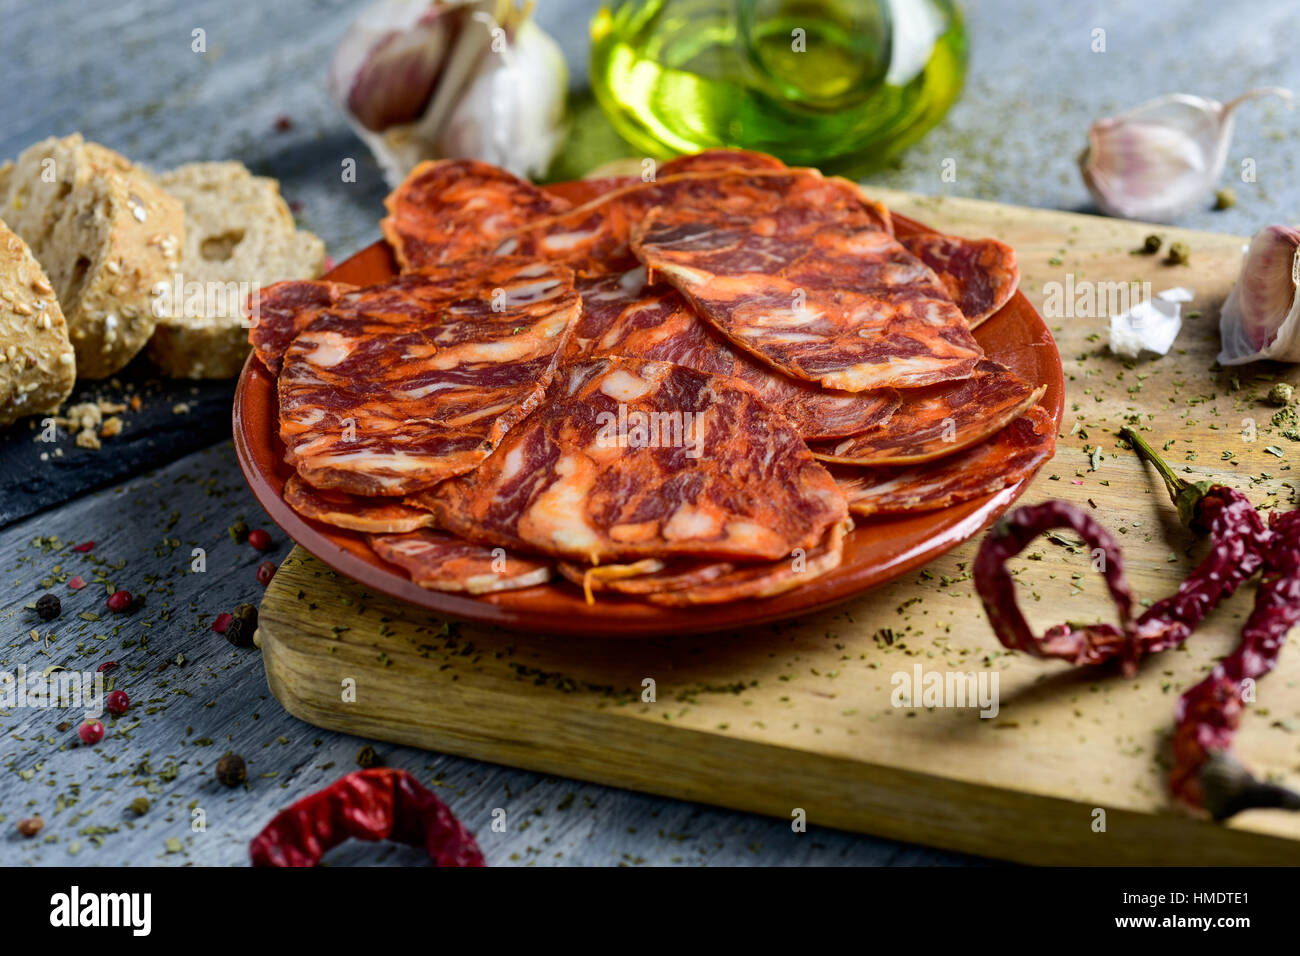 Nahaufnahme eines Steingut Platte mit einigen Scheiben von spanischen Chorizo, Wurstwaren Wurst, einige Scheiben Brot, ein Glas Menage mit Olivenöl und einige g Stockfoto